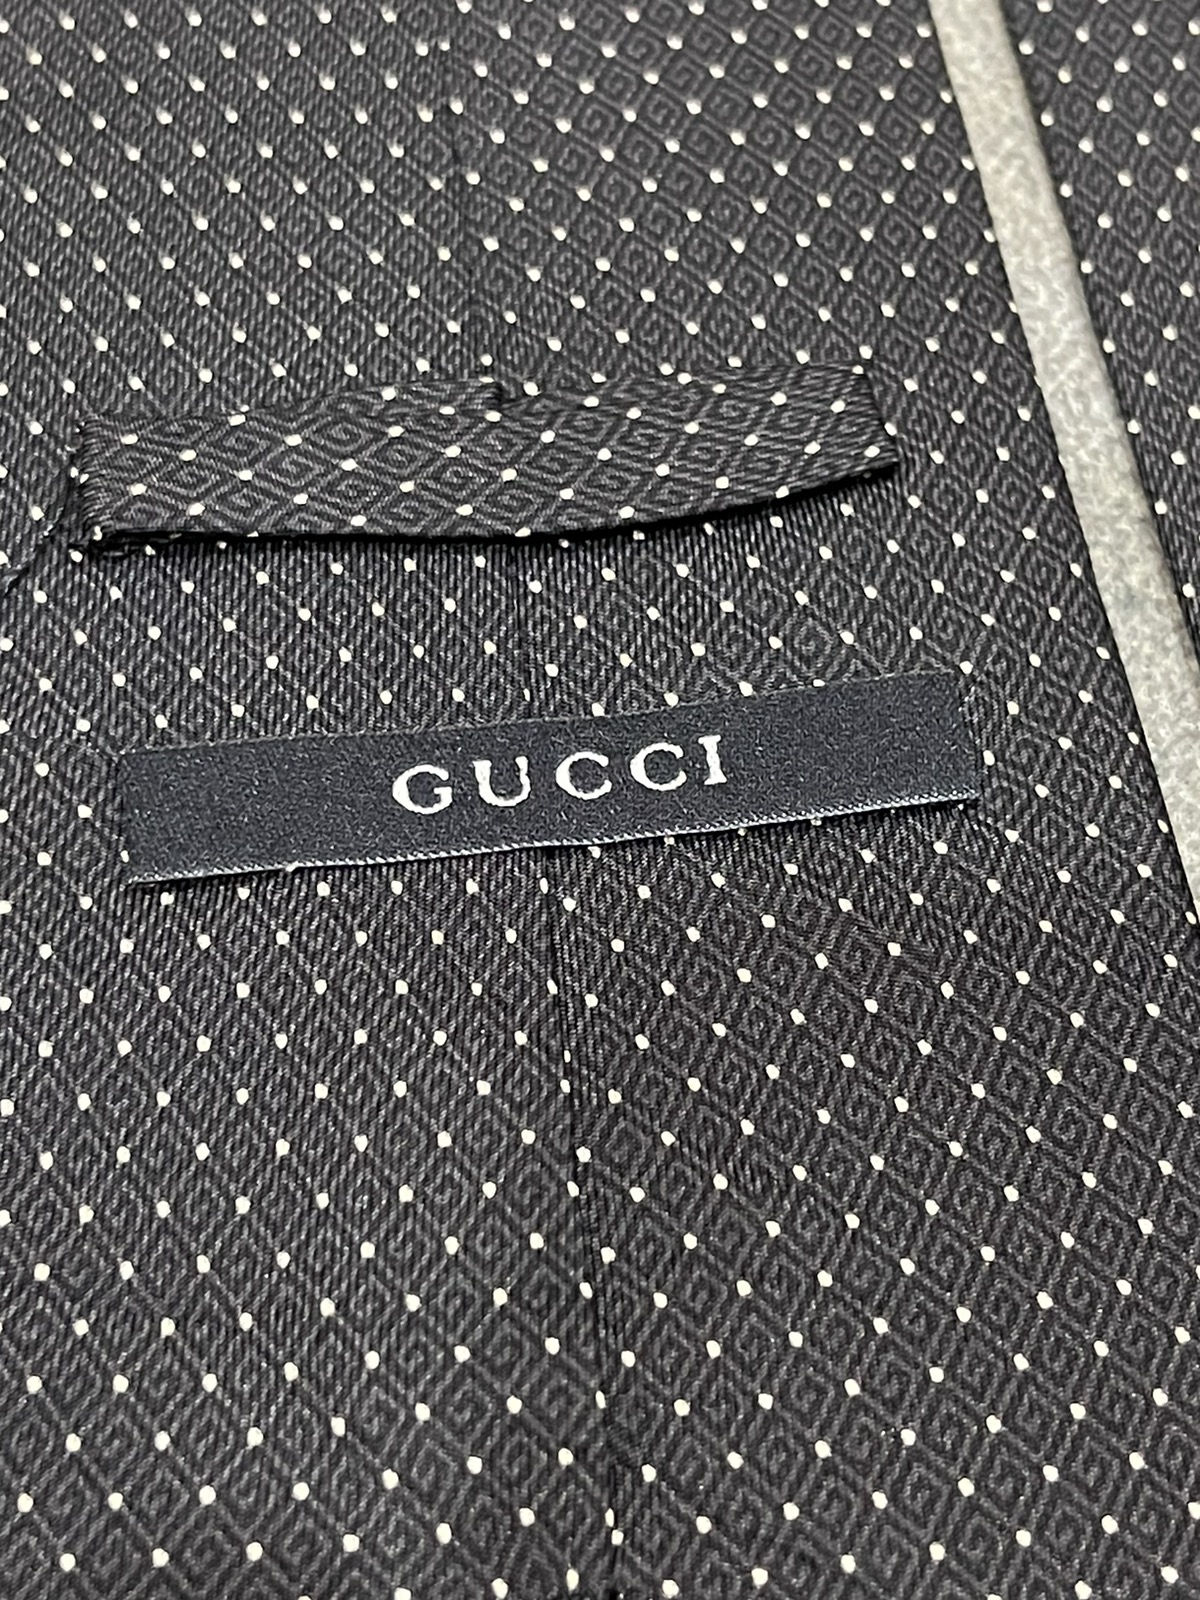 Gucci Silk Tie - 6